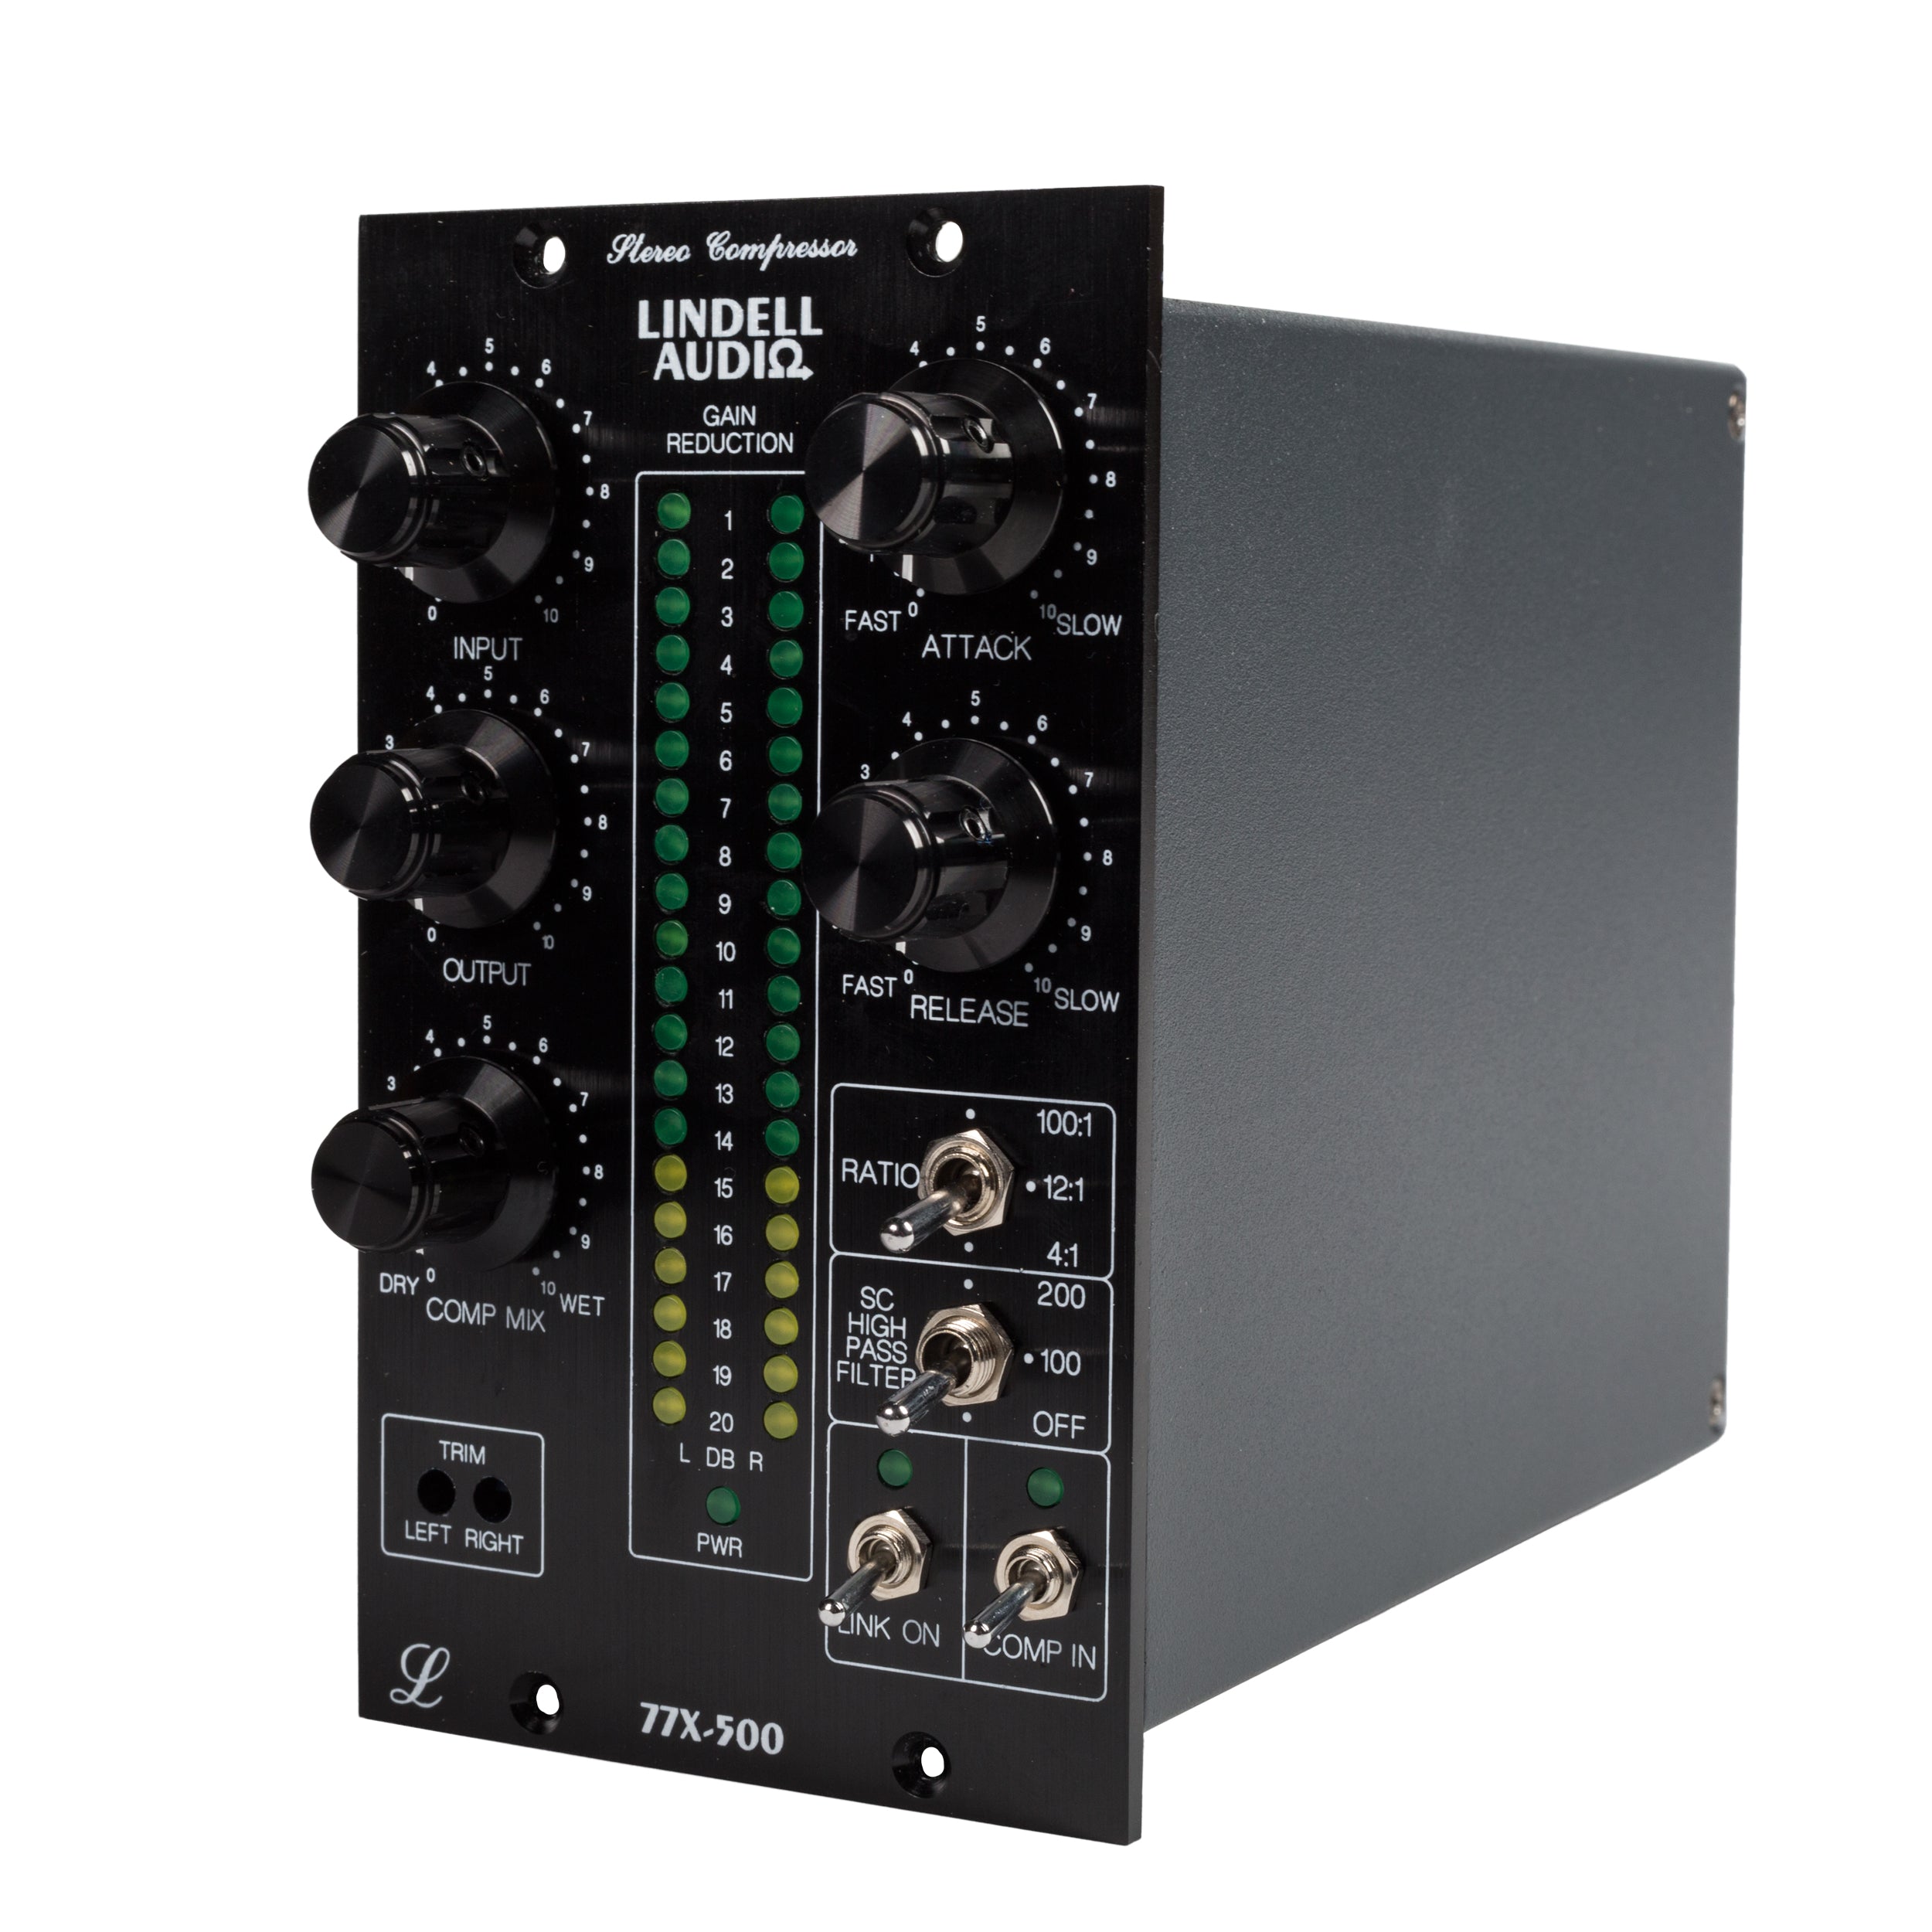 Lindell Audio 77X 500